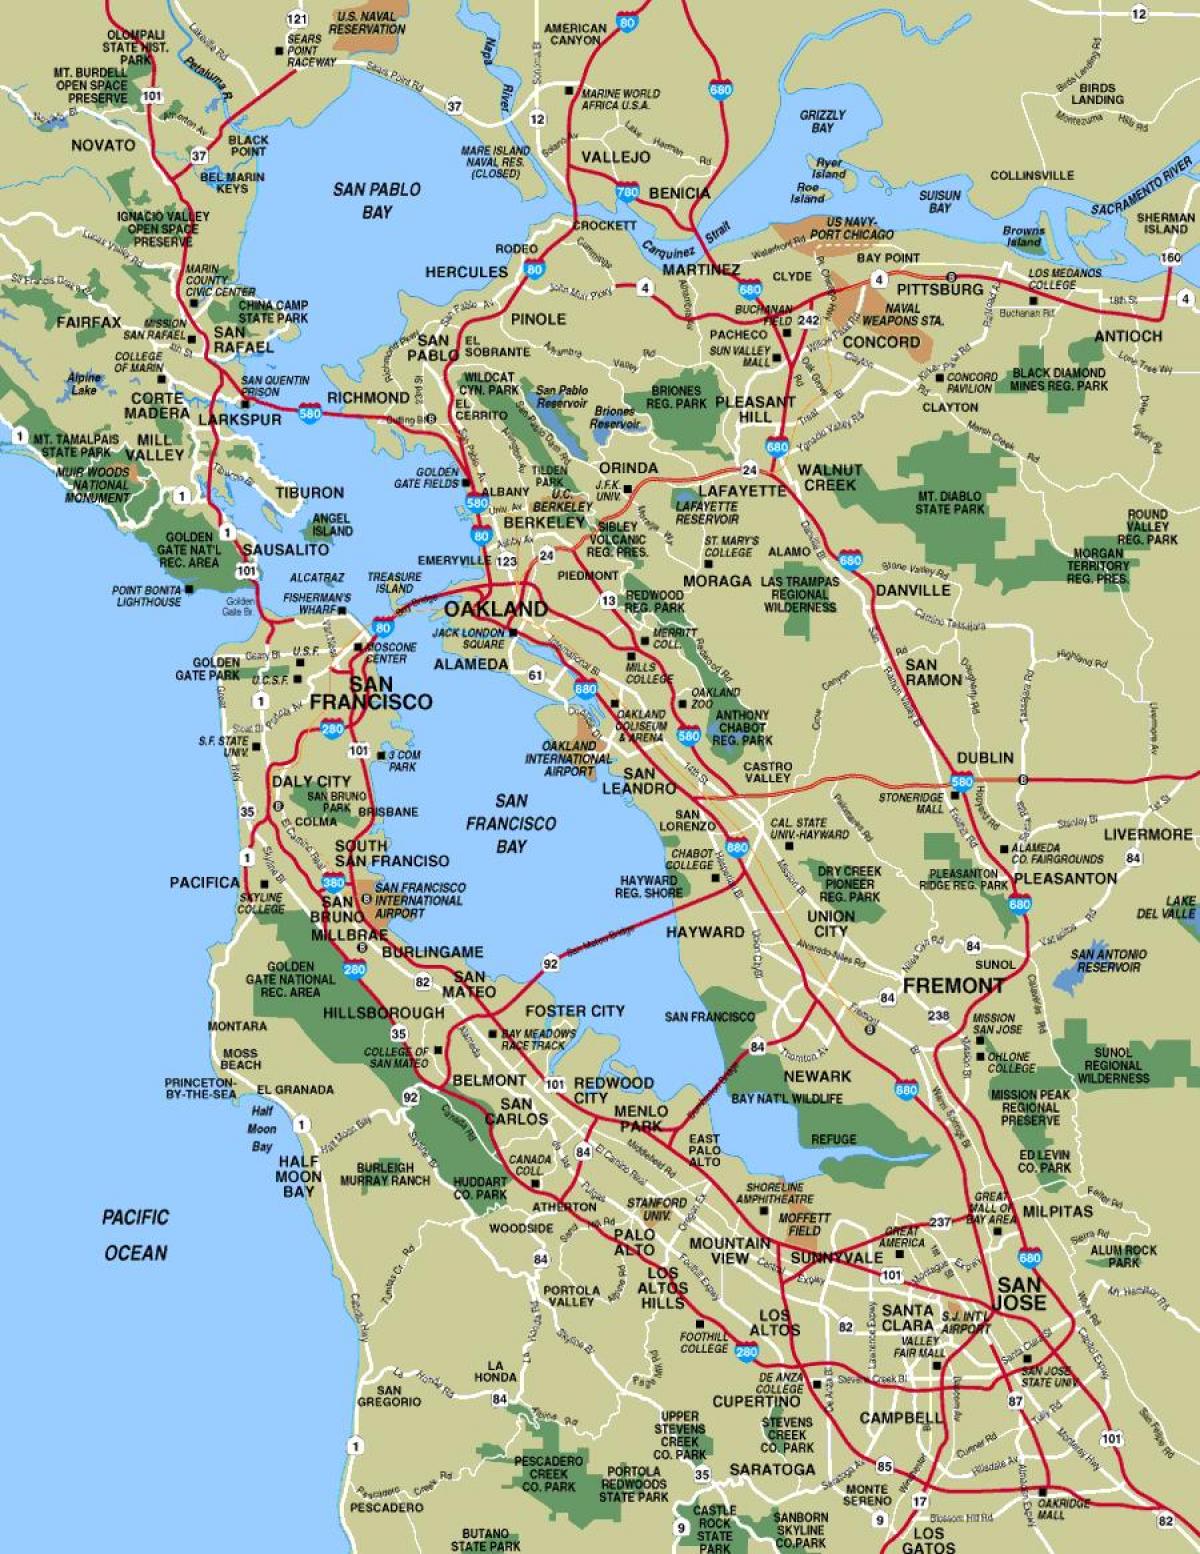 რუკა საქართველოს ქალაქების გარშემო, San Francisco